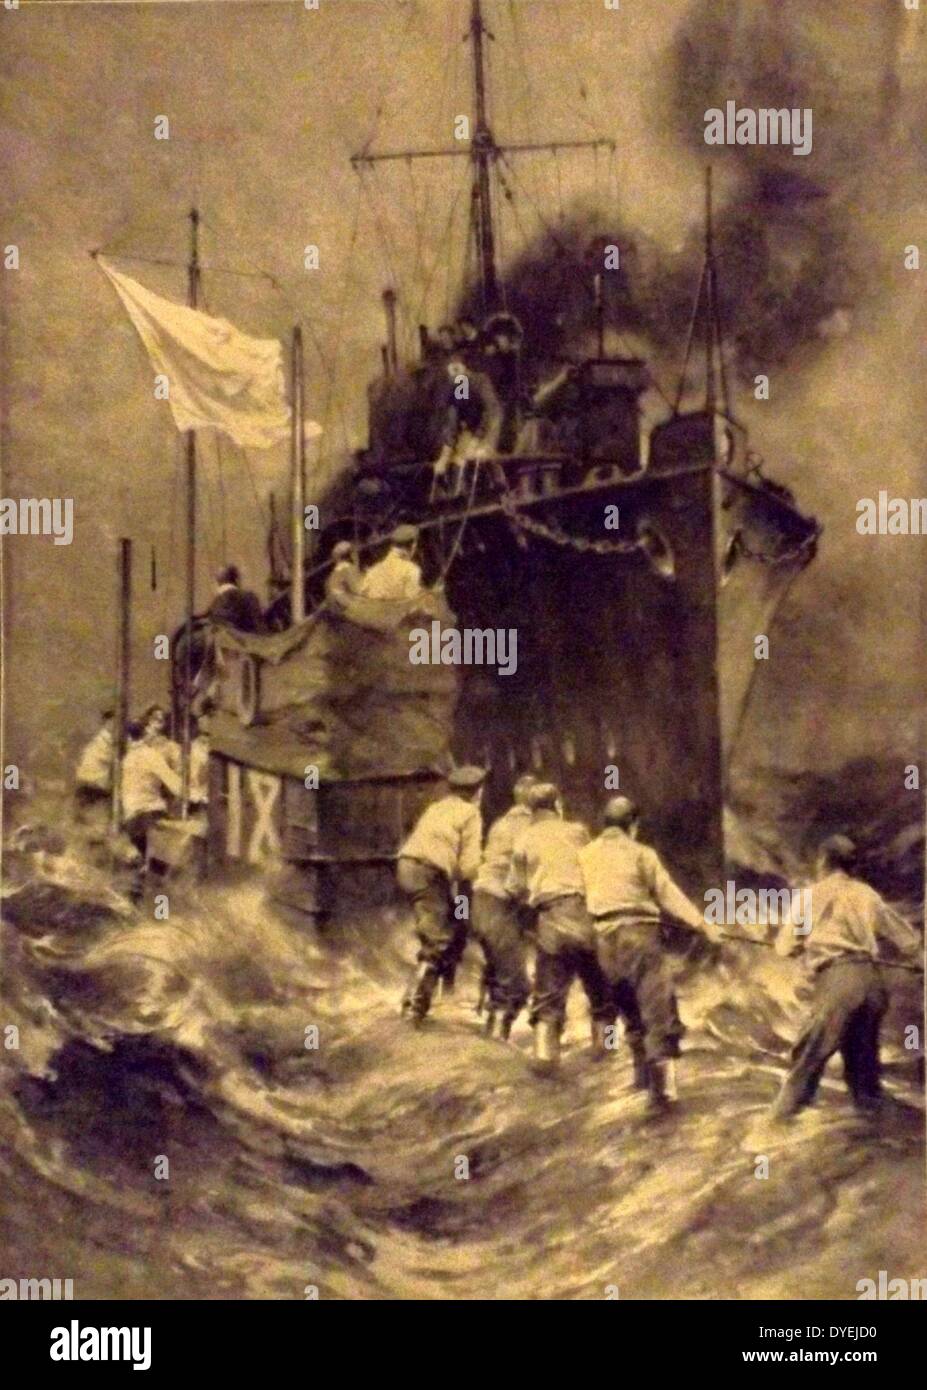 La prima guerra mondiale . 1914, le forze britanniche arrivano al salvataggio dell'equipaggio di un U-boat tedesca danneggiata sottomarino al largo delle coste della Scozia Novembre 1914. Porto belga di Anversa Foto Stock